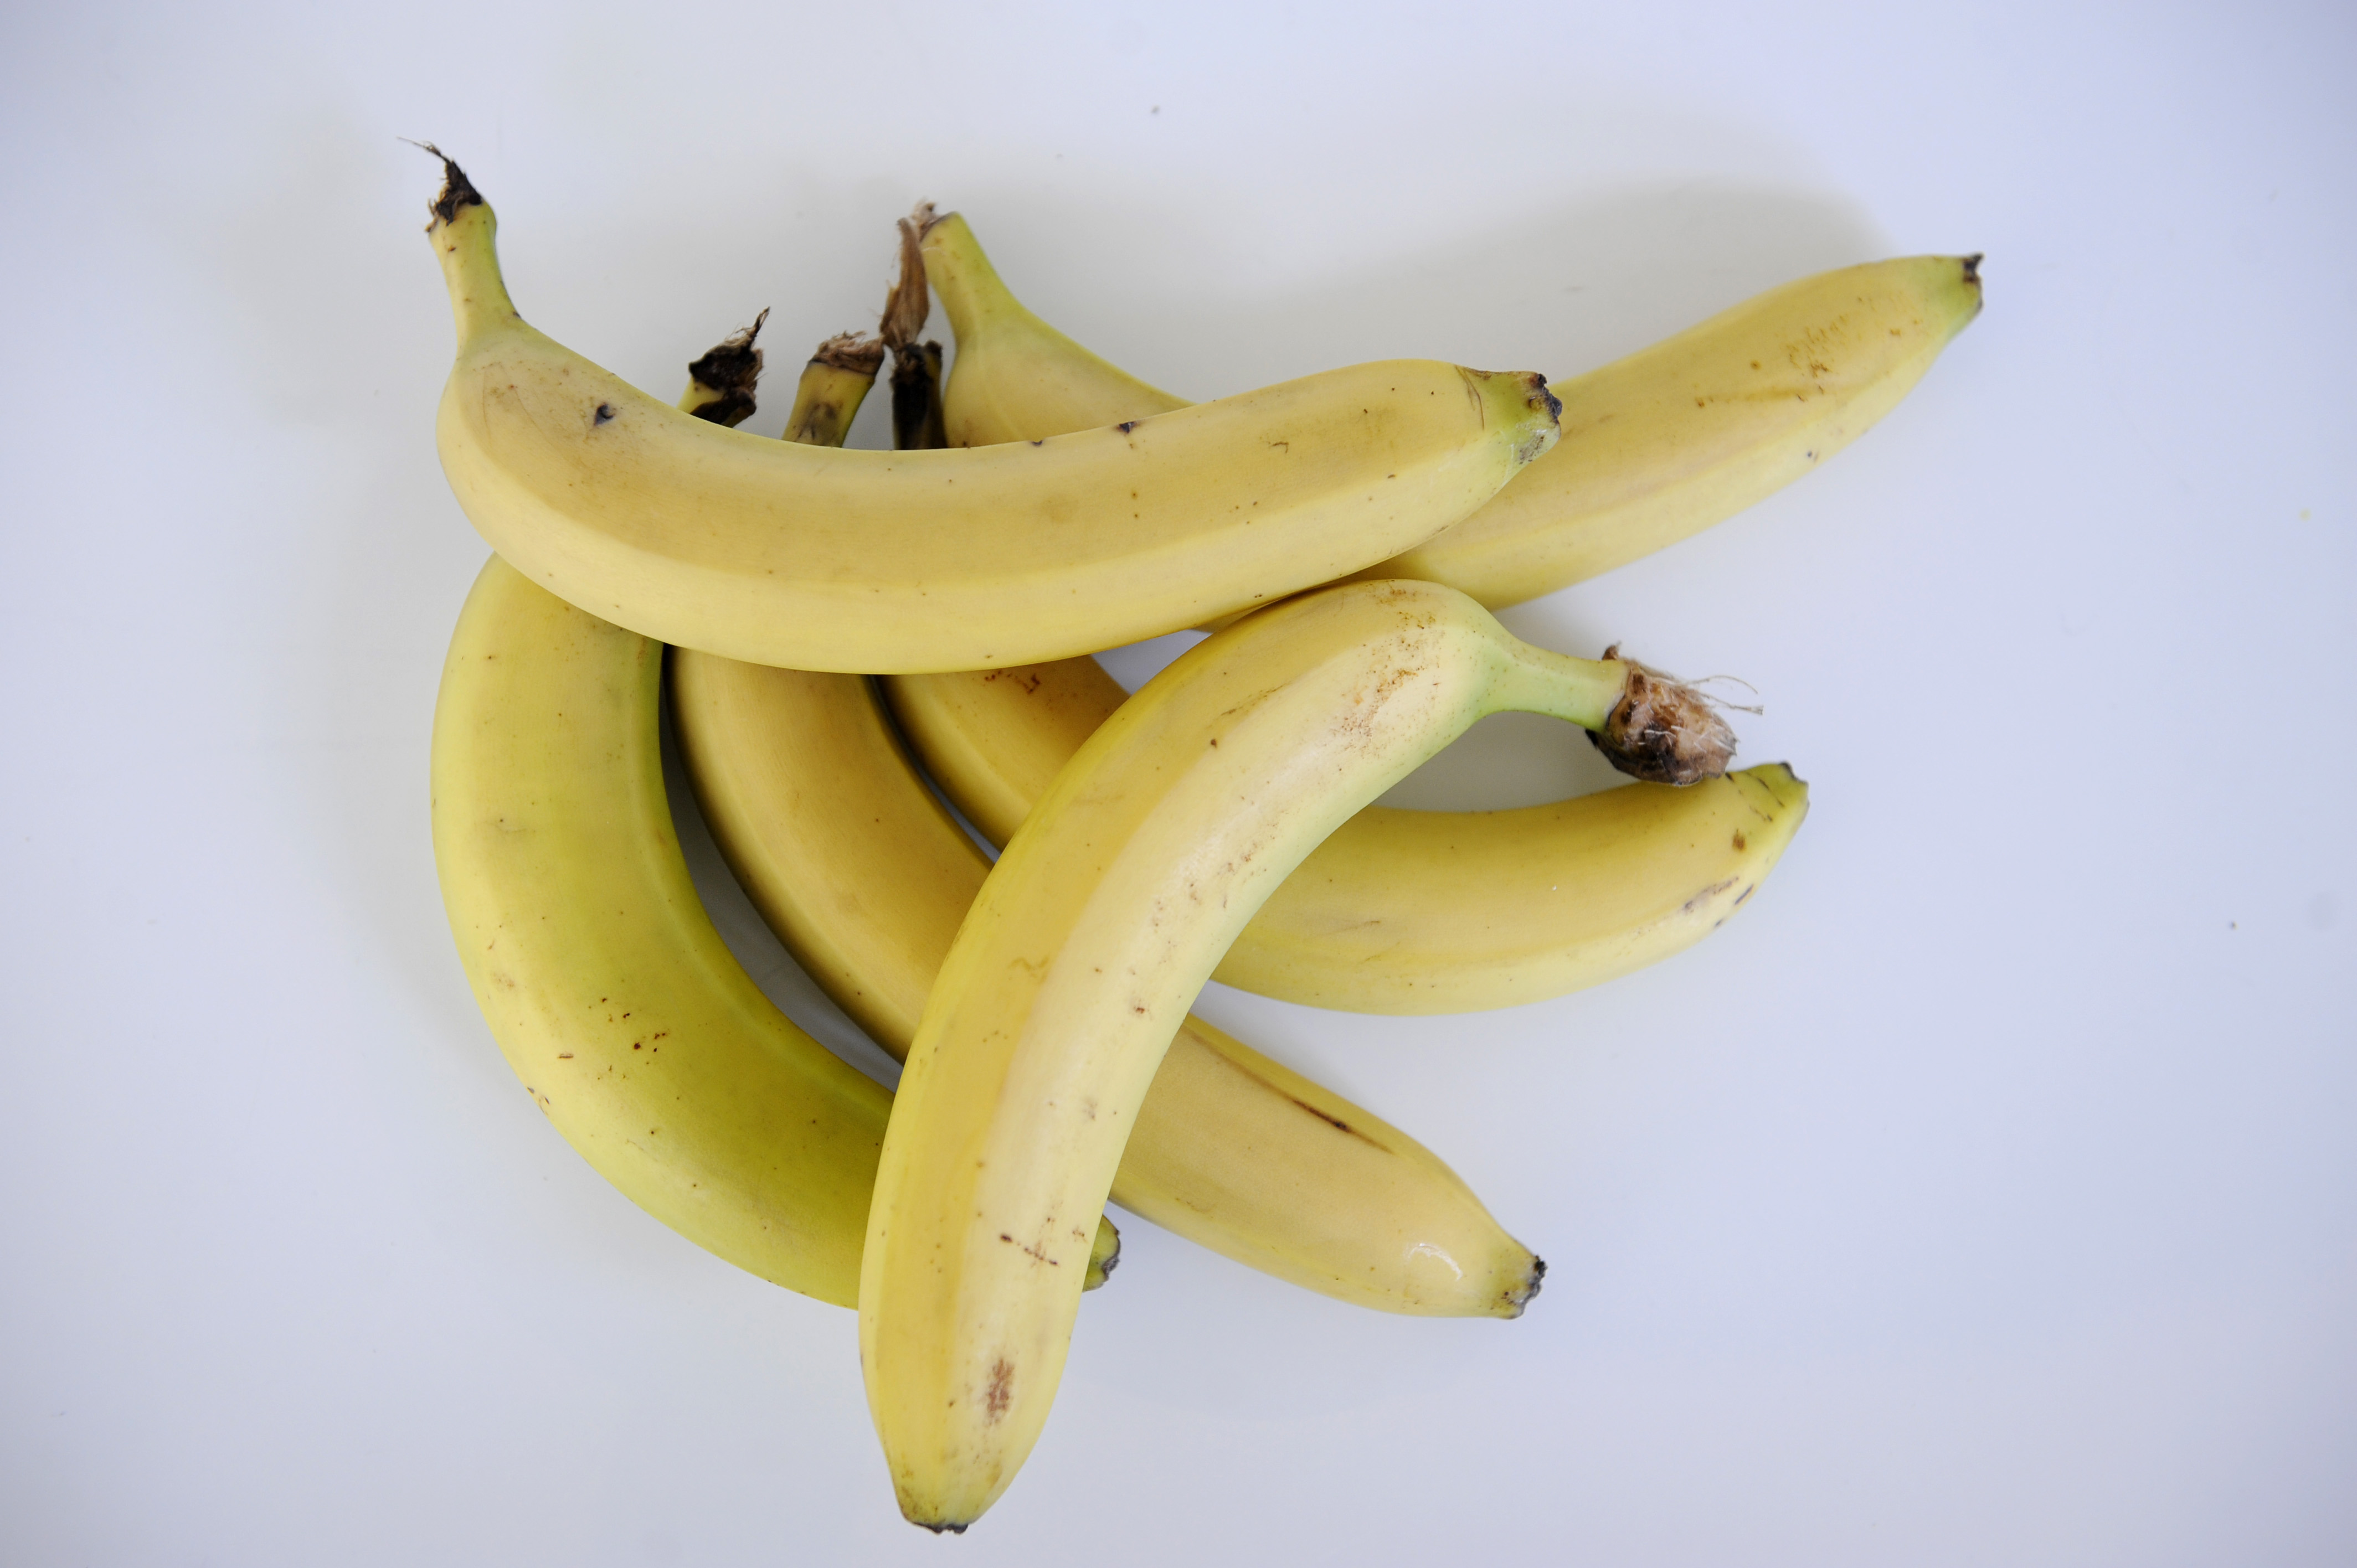 Det var tredje gången på ett år som mörkyade spelare attackeras med bananer i Ryssland. Den annorlunda lösningen på problemet? "Sluta importera frukten."